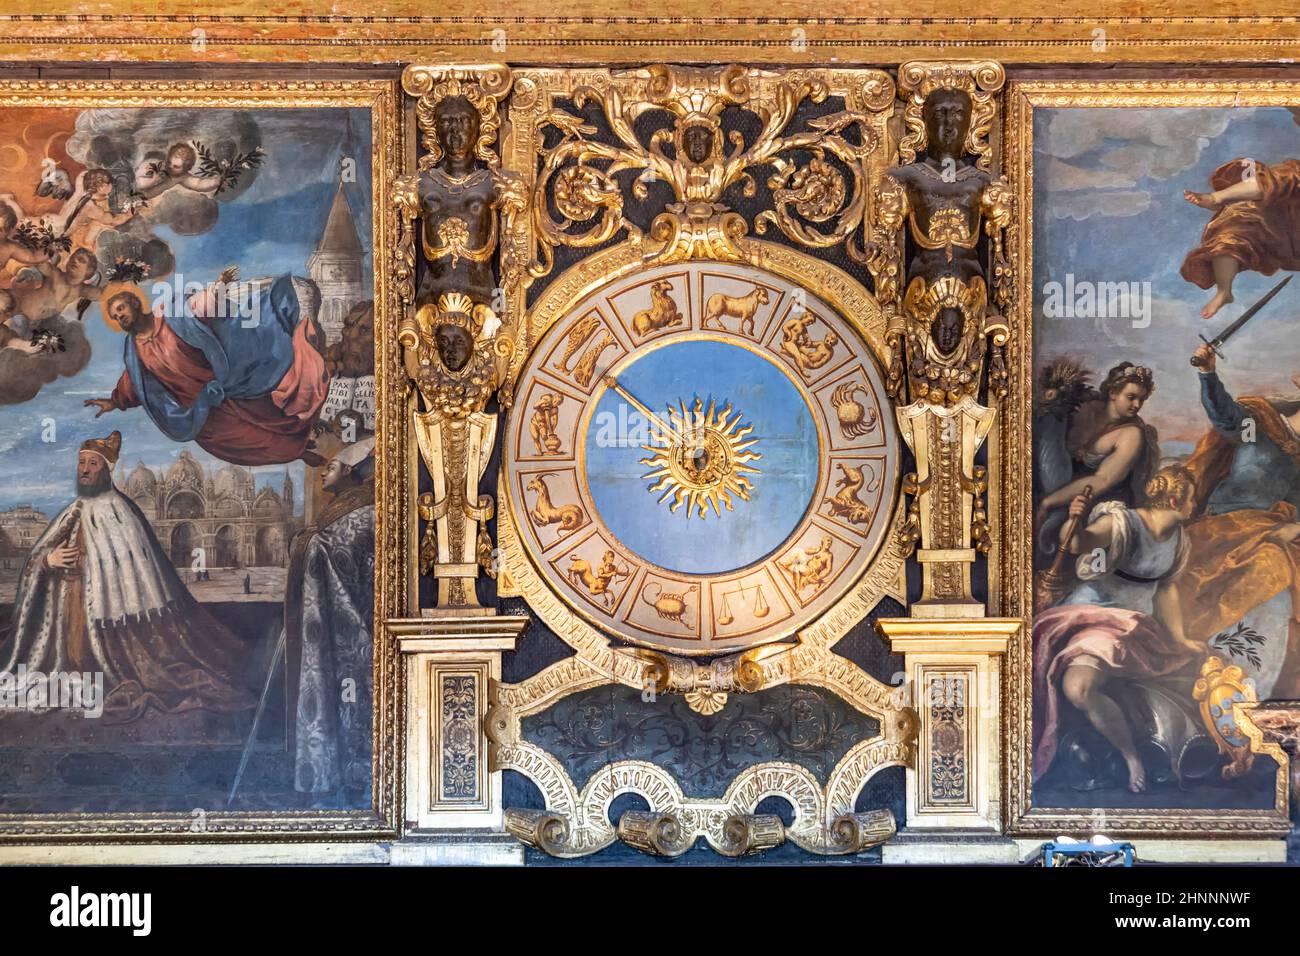 Interno del Palazzo Ducale - muro con orologio. Il Palazzo Ducale è stato costruito in stile gotico veneziano e uno dei principali punti di riferimento della città di Venezia. Foto Stock